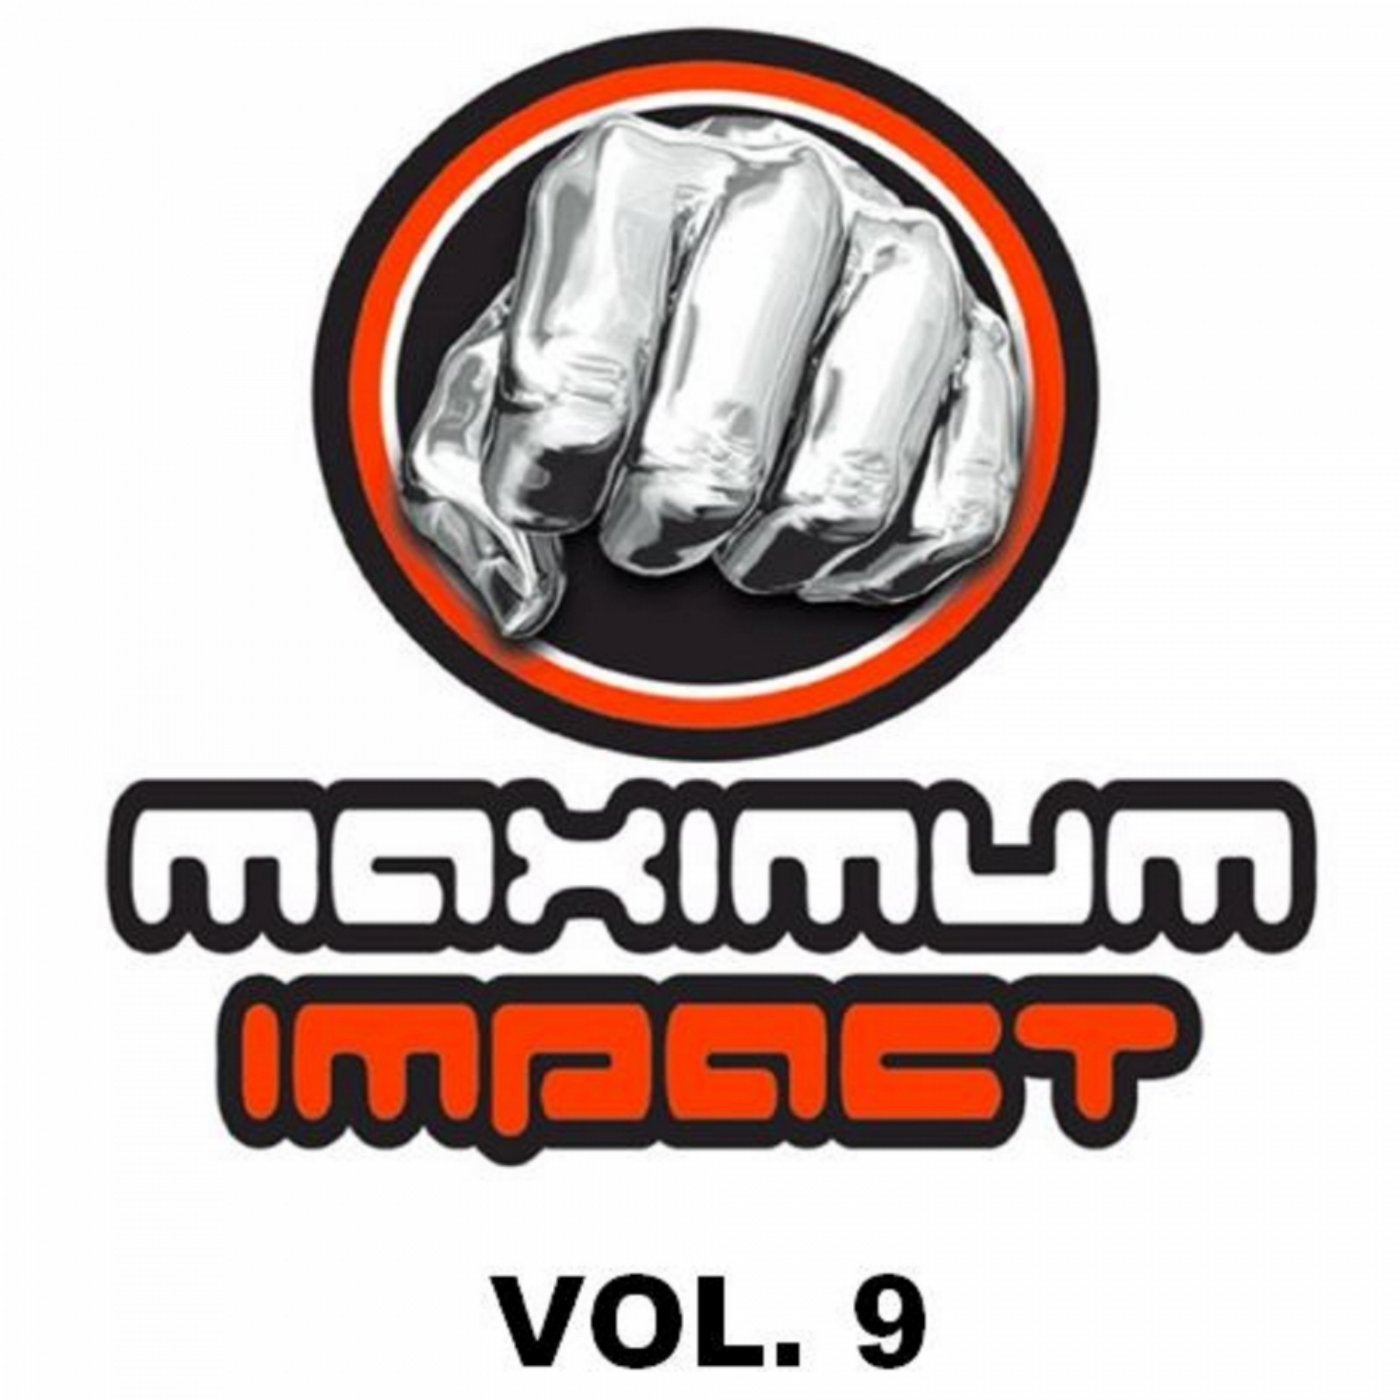 Maximum Impact, Vol 9